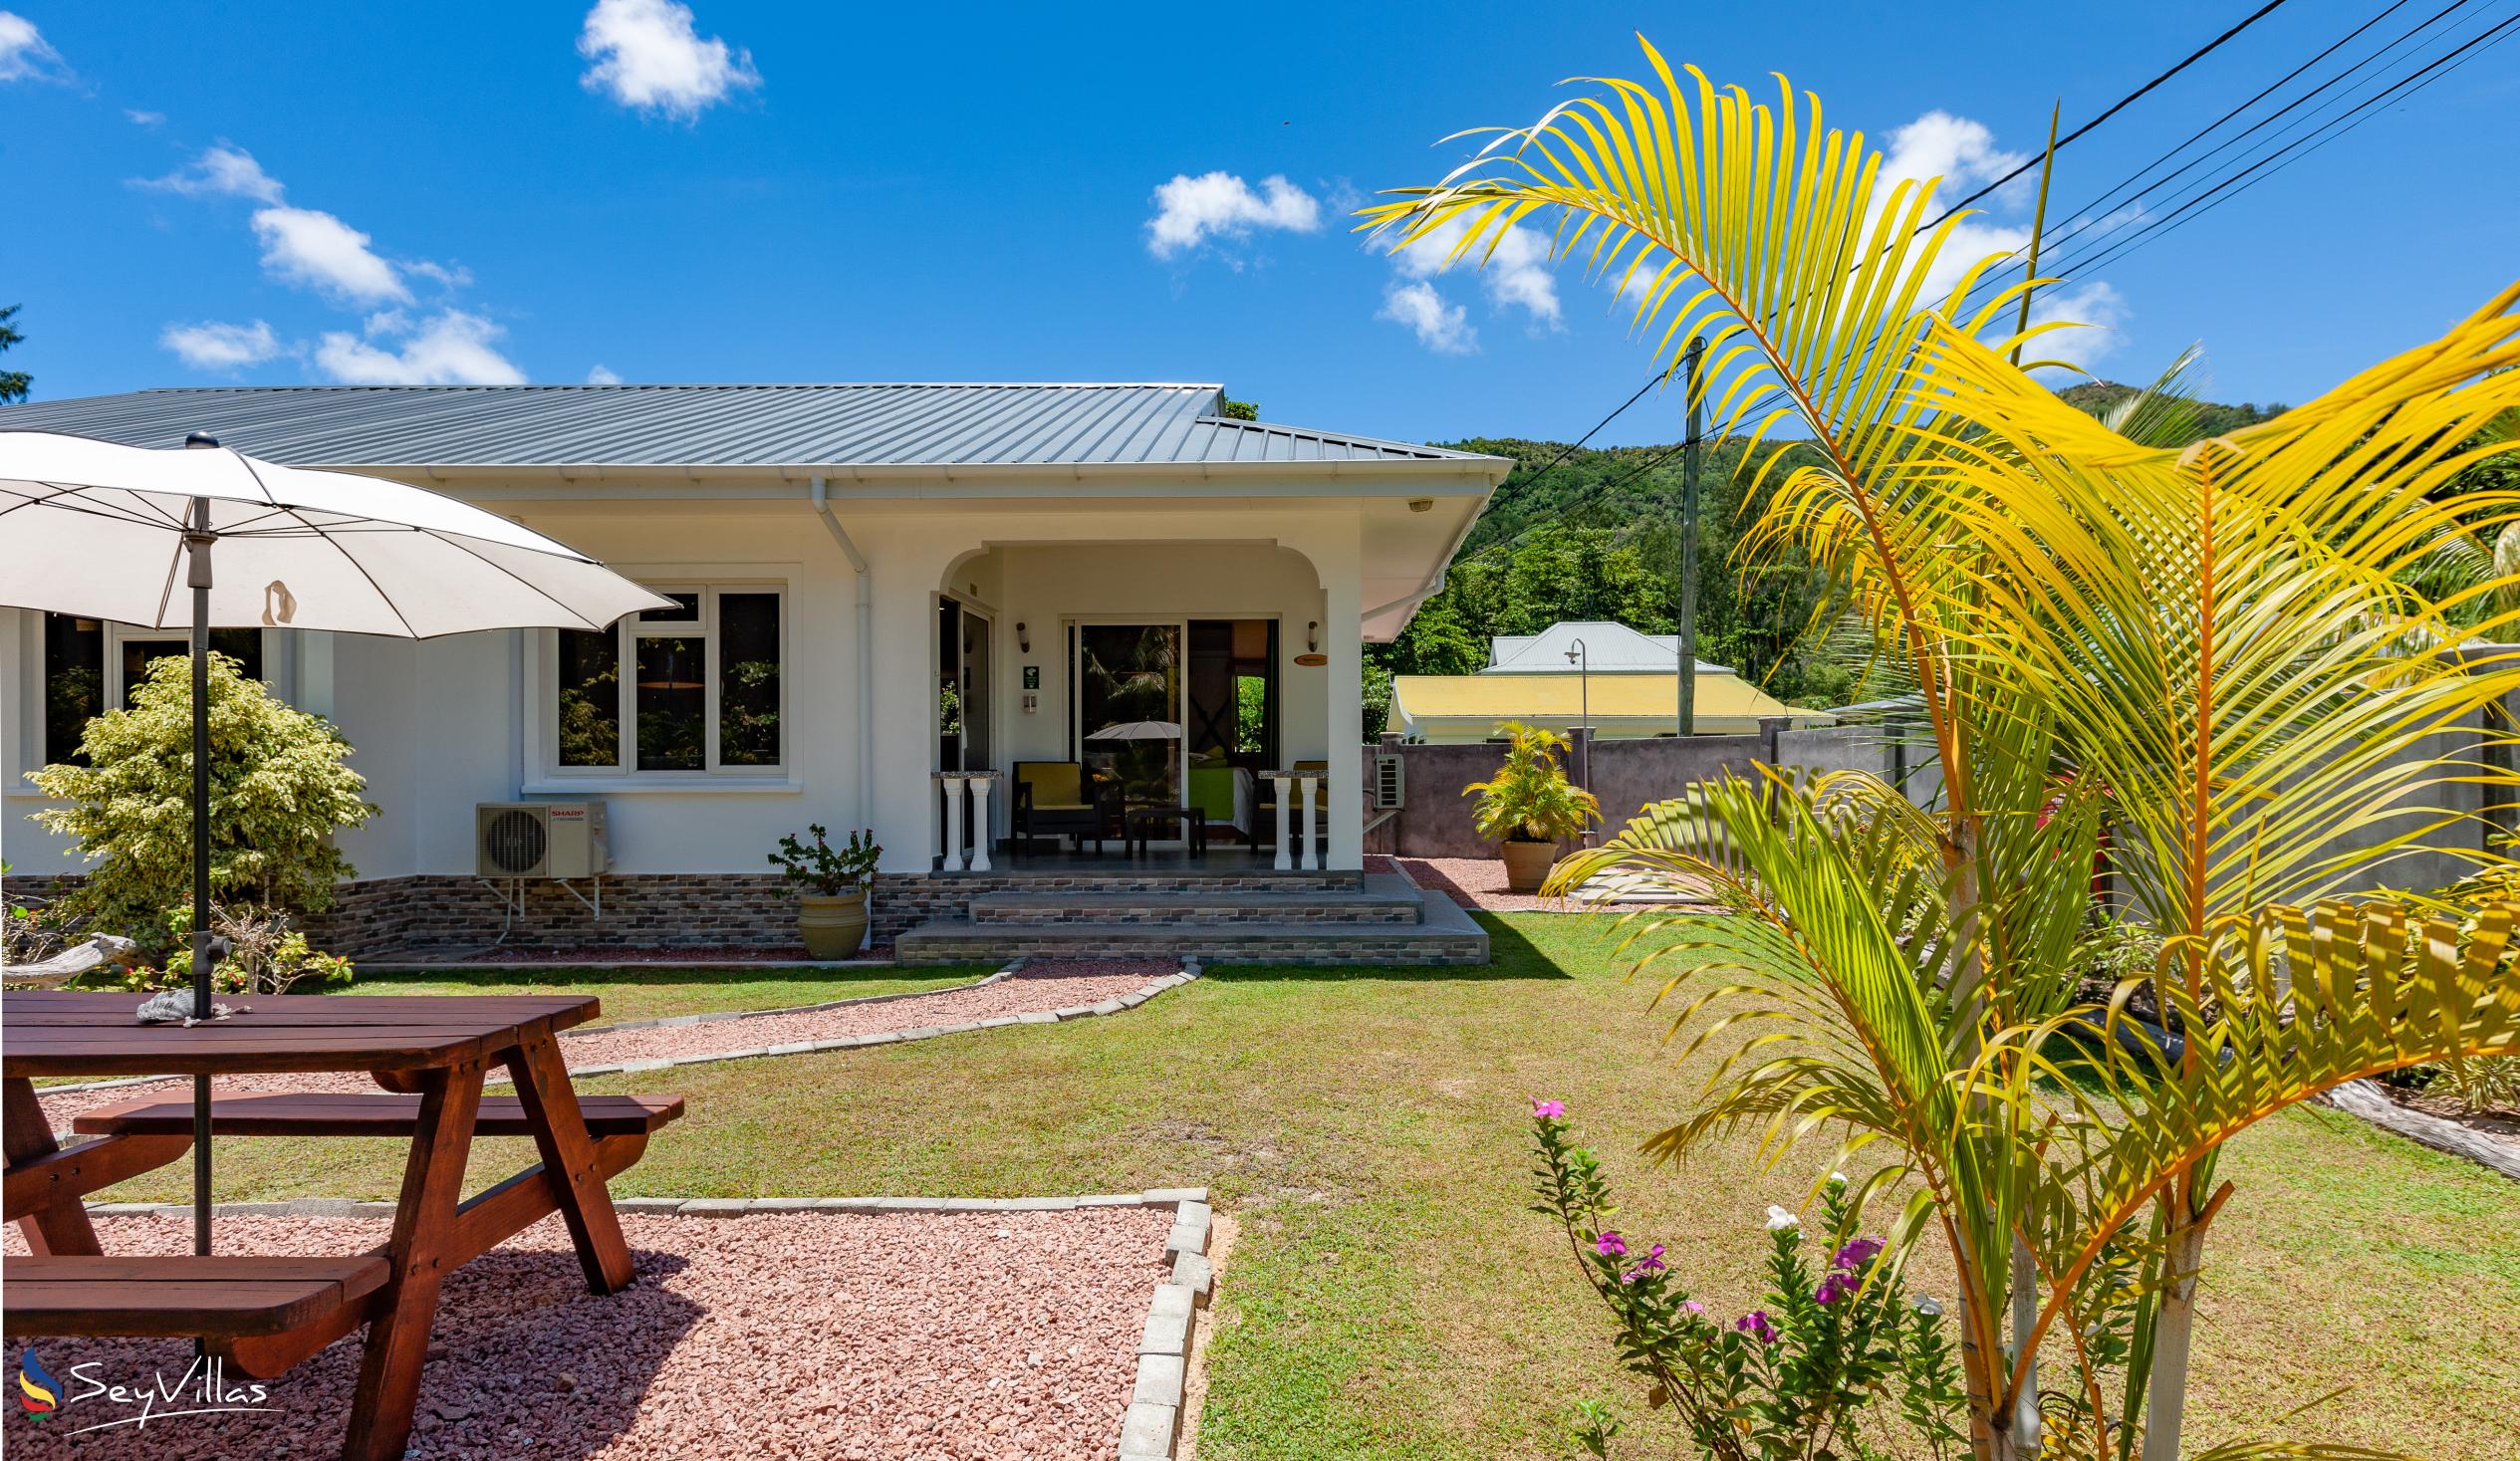 Foto 3: ANV Holiday Apartments - Aussenbereich - Praslin (Seychellen)